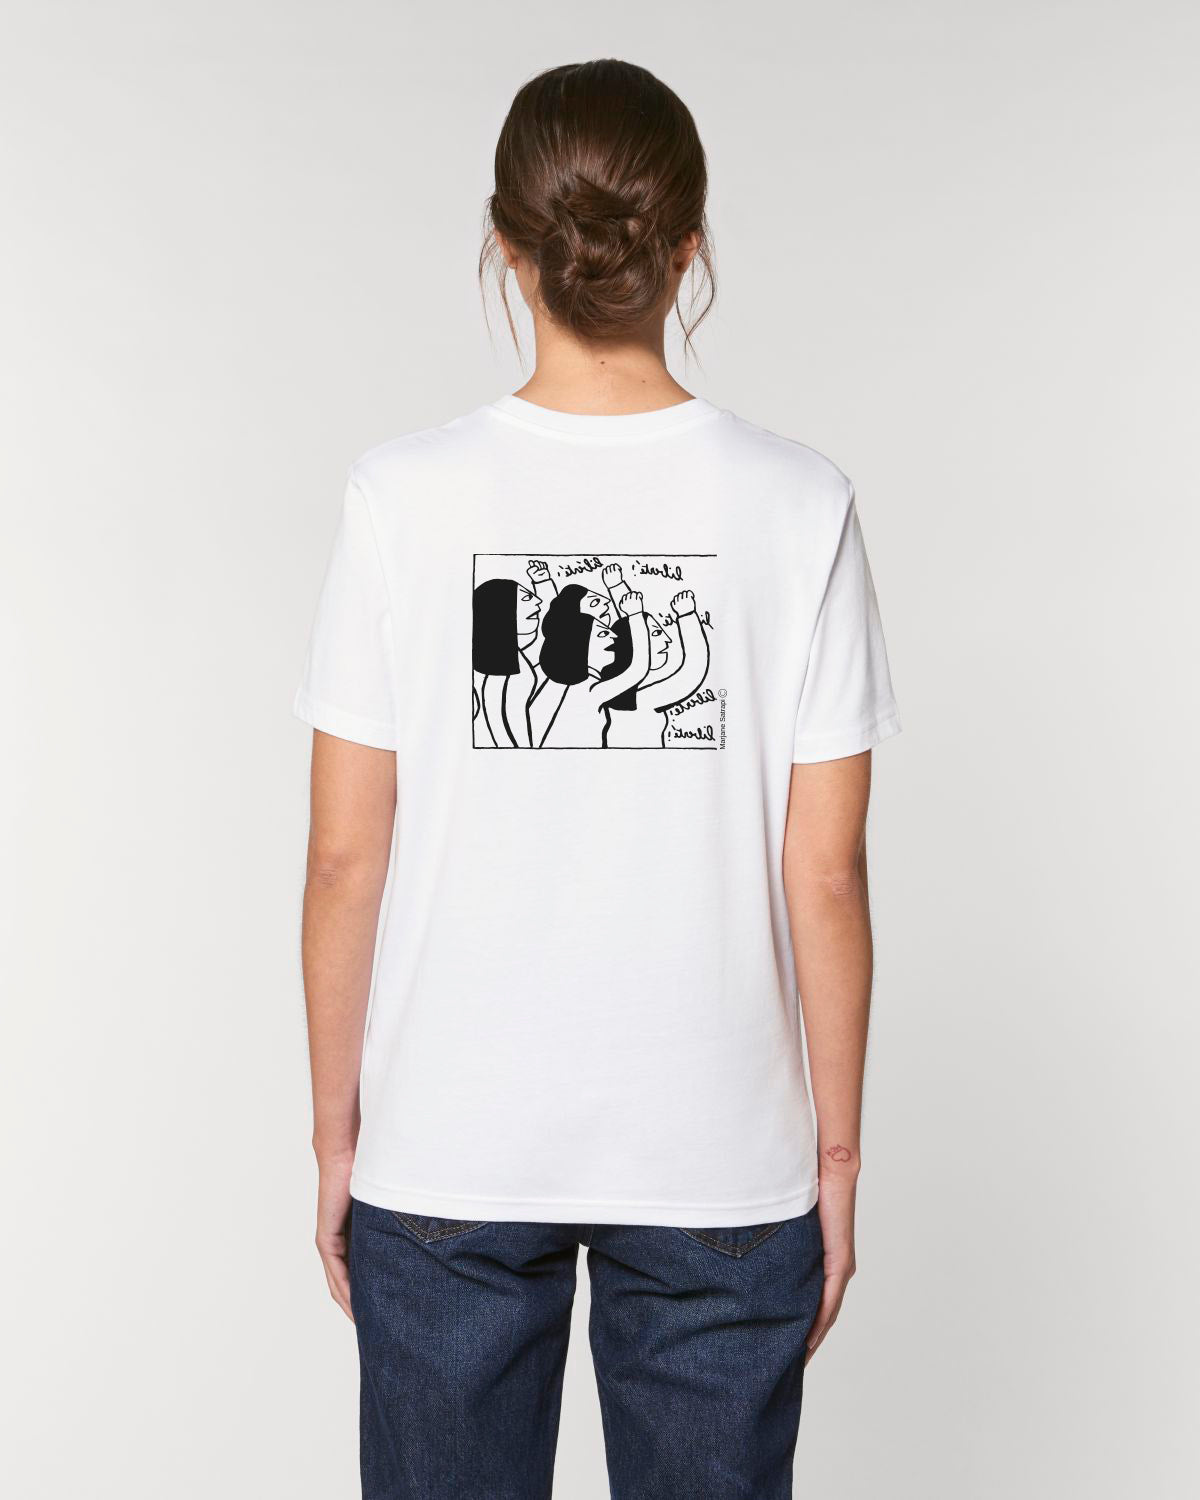 T-Shirt « Femme Vie Liberté » - FEMME